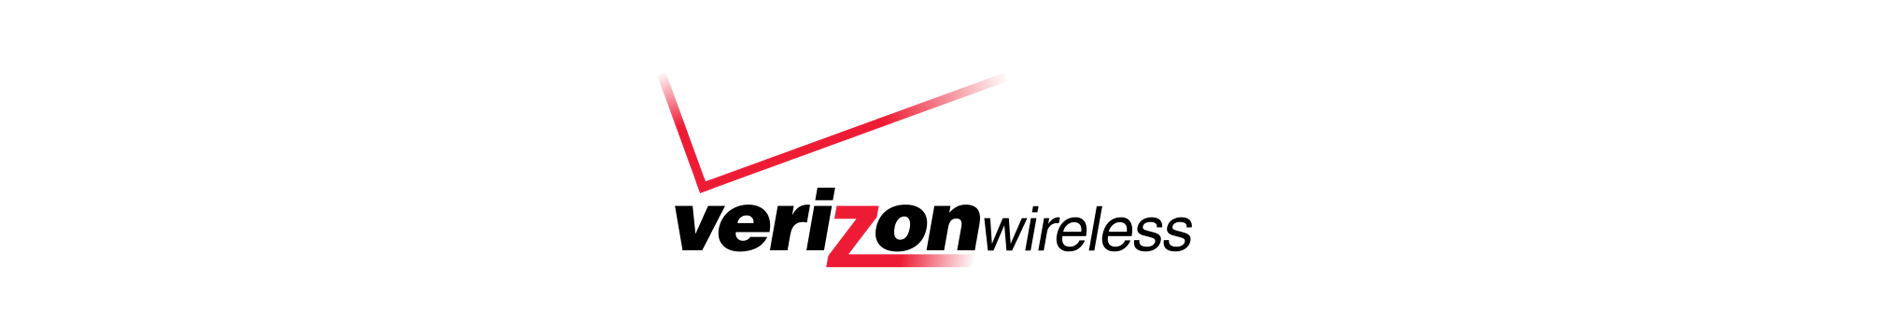 verizon logo design